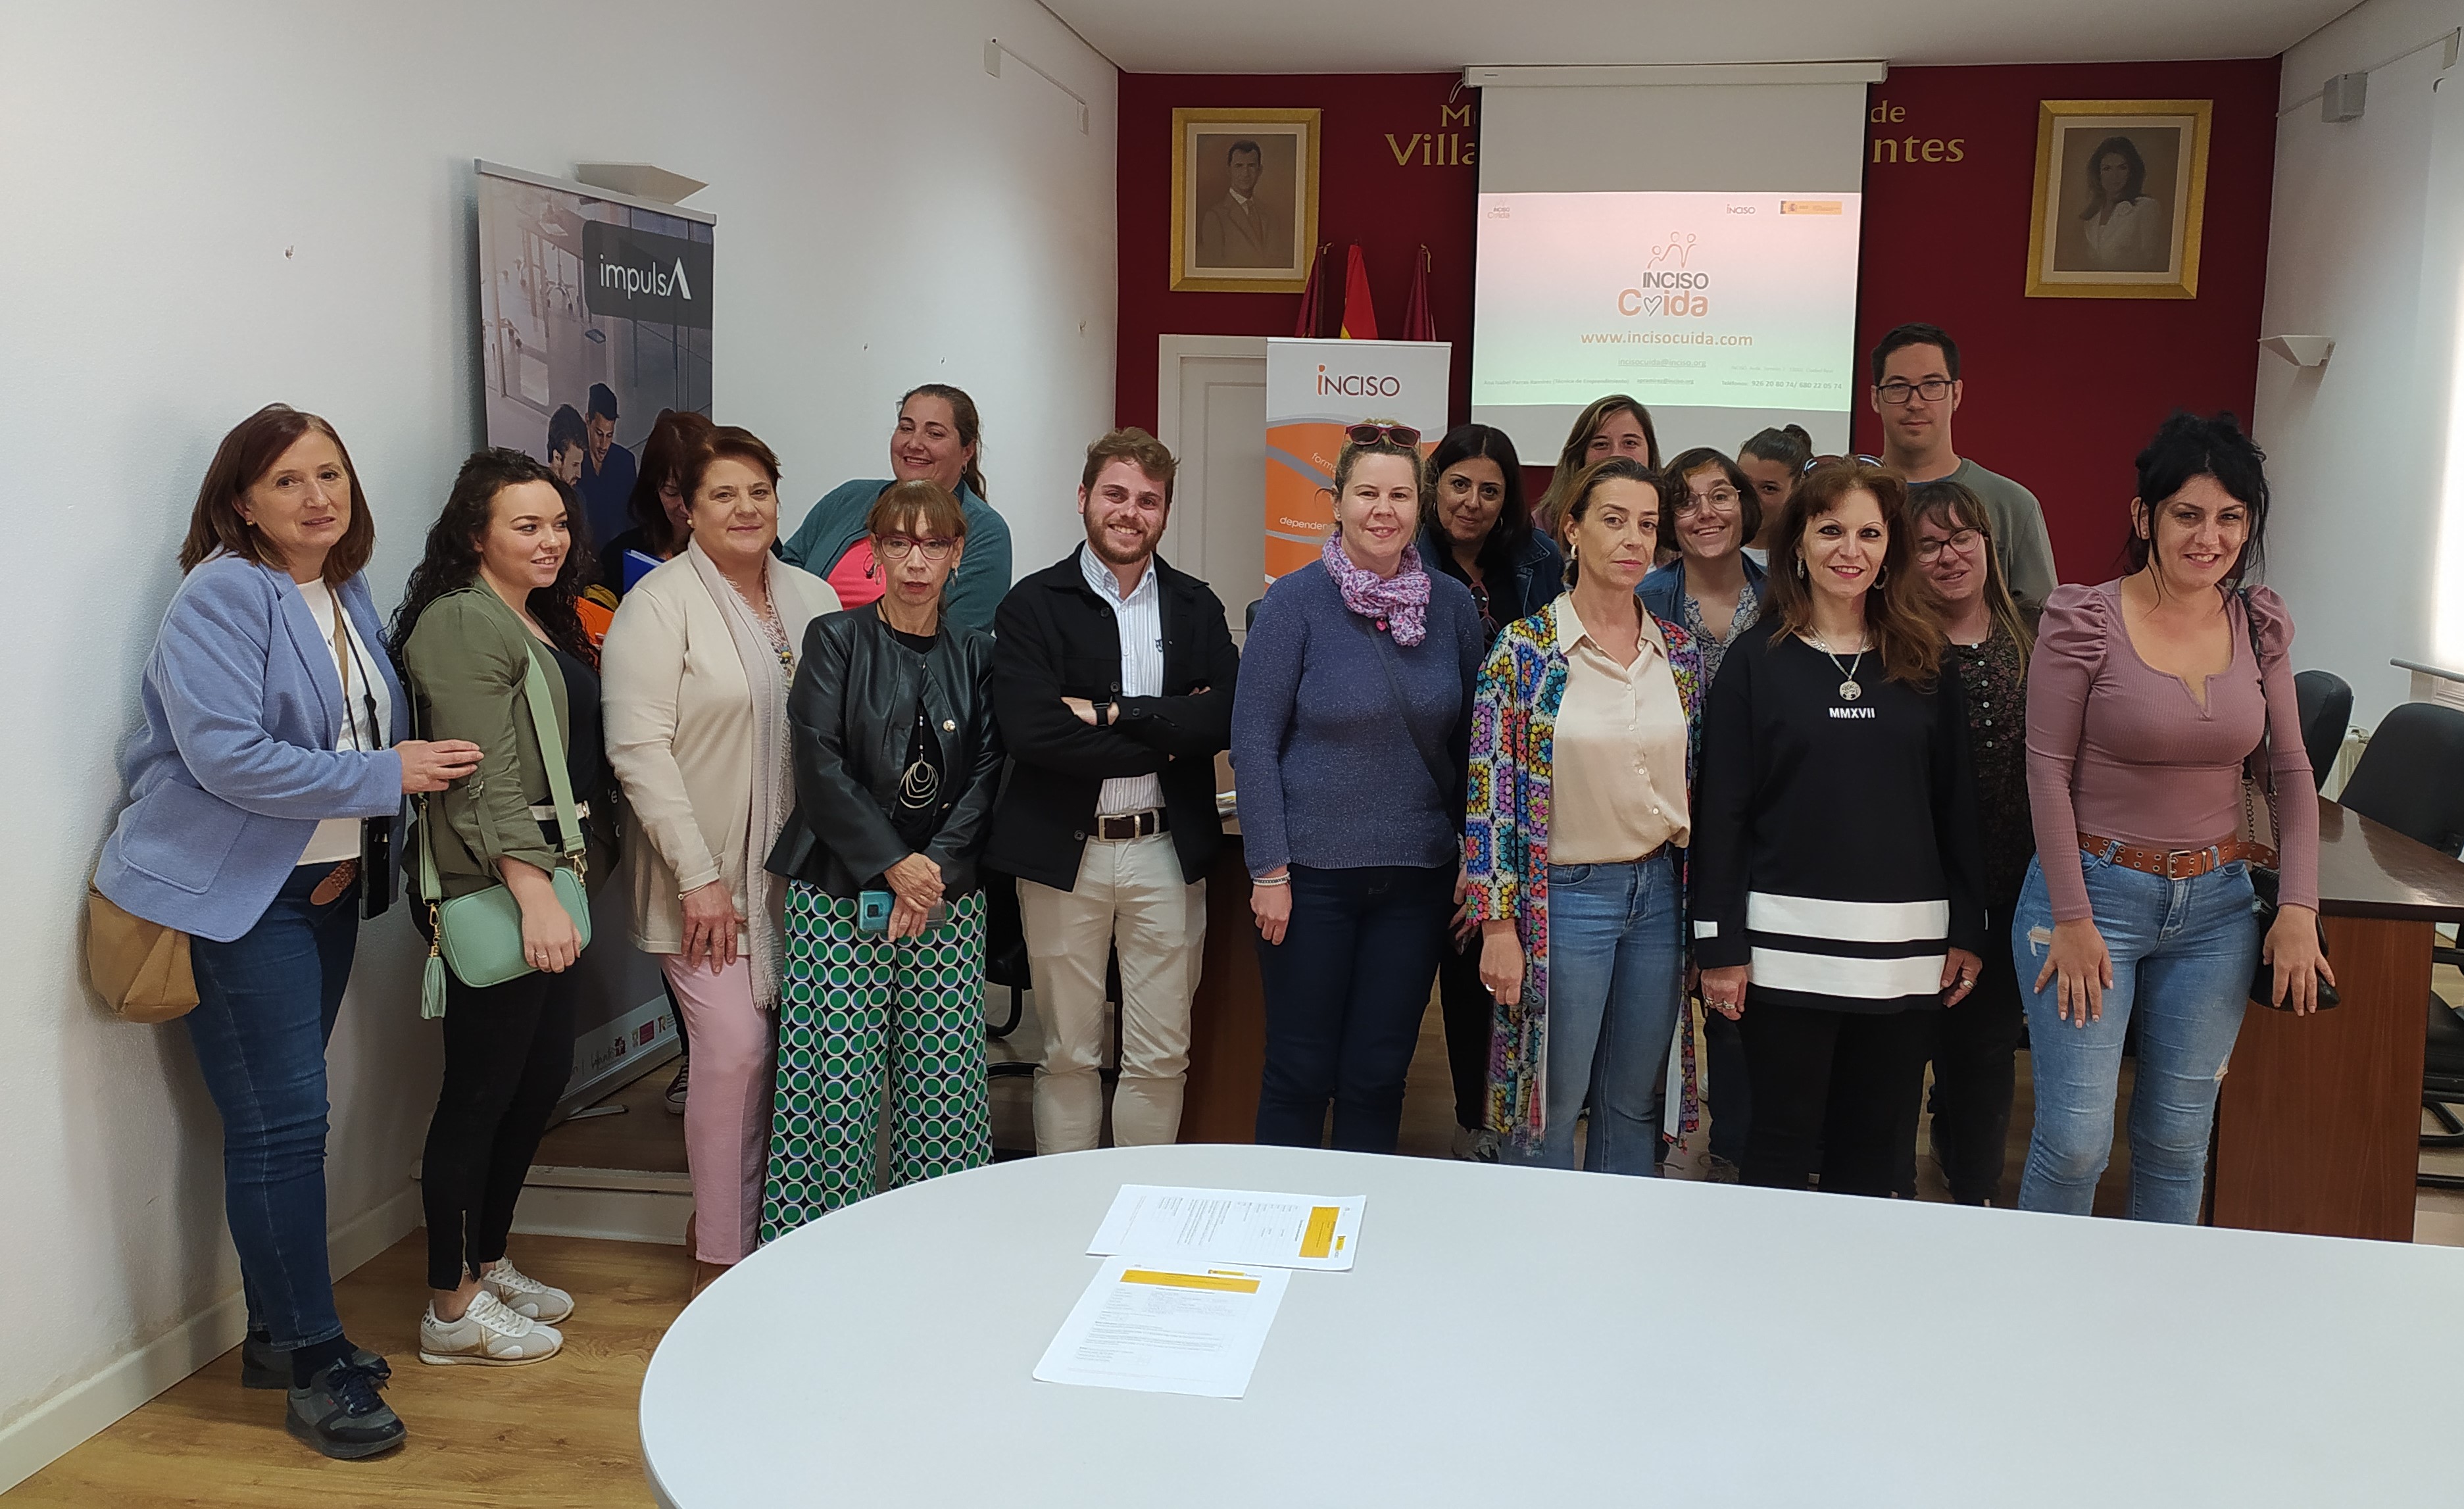 El Centro de la Mujer de Villanueva de los Infantes e INCISO Integración organizan un Taller de Emprendimiento Cooperativo